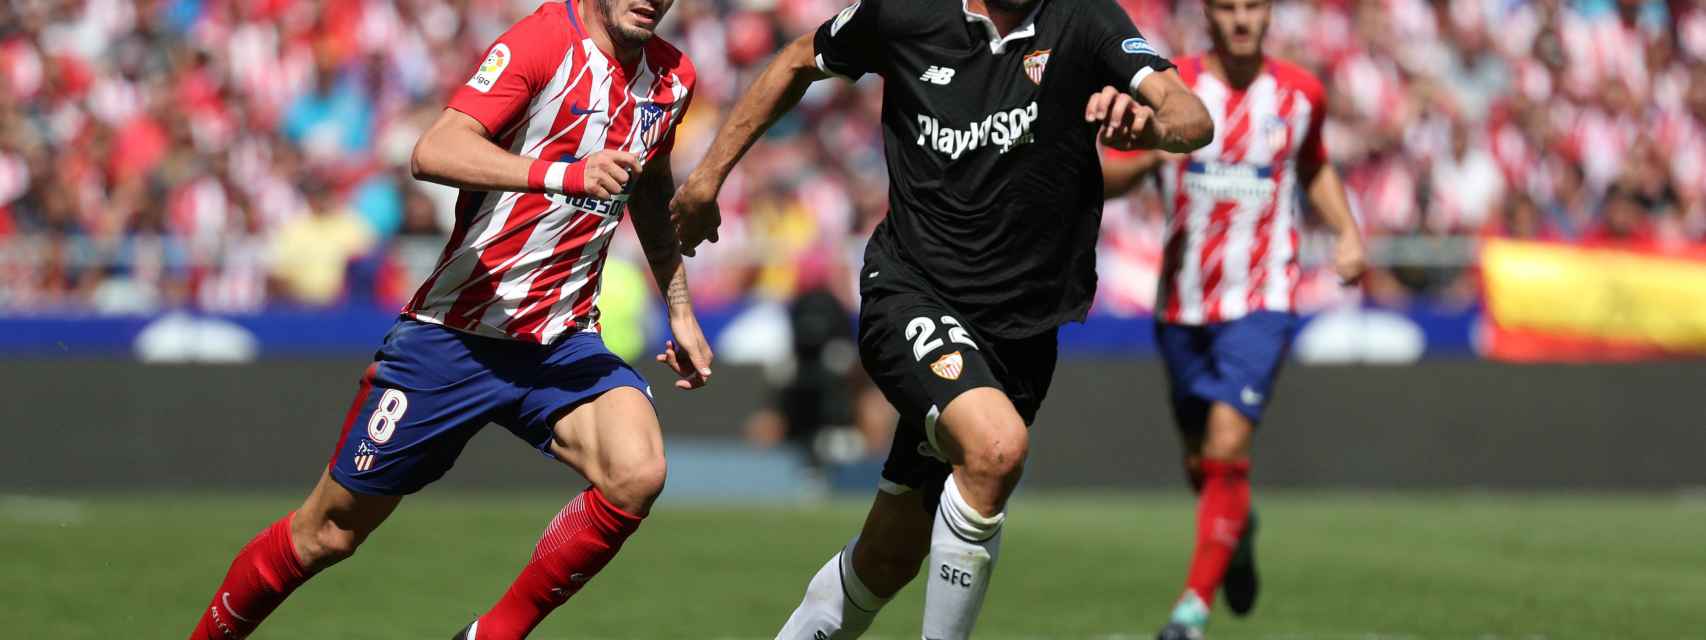 La Liga: Atlético de Madrid - Sevilla, en directo